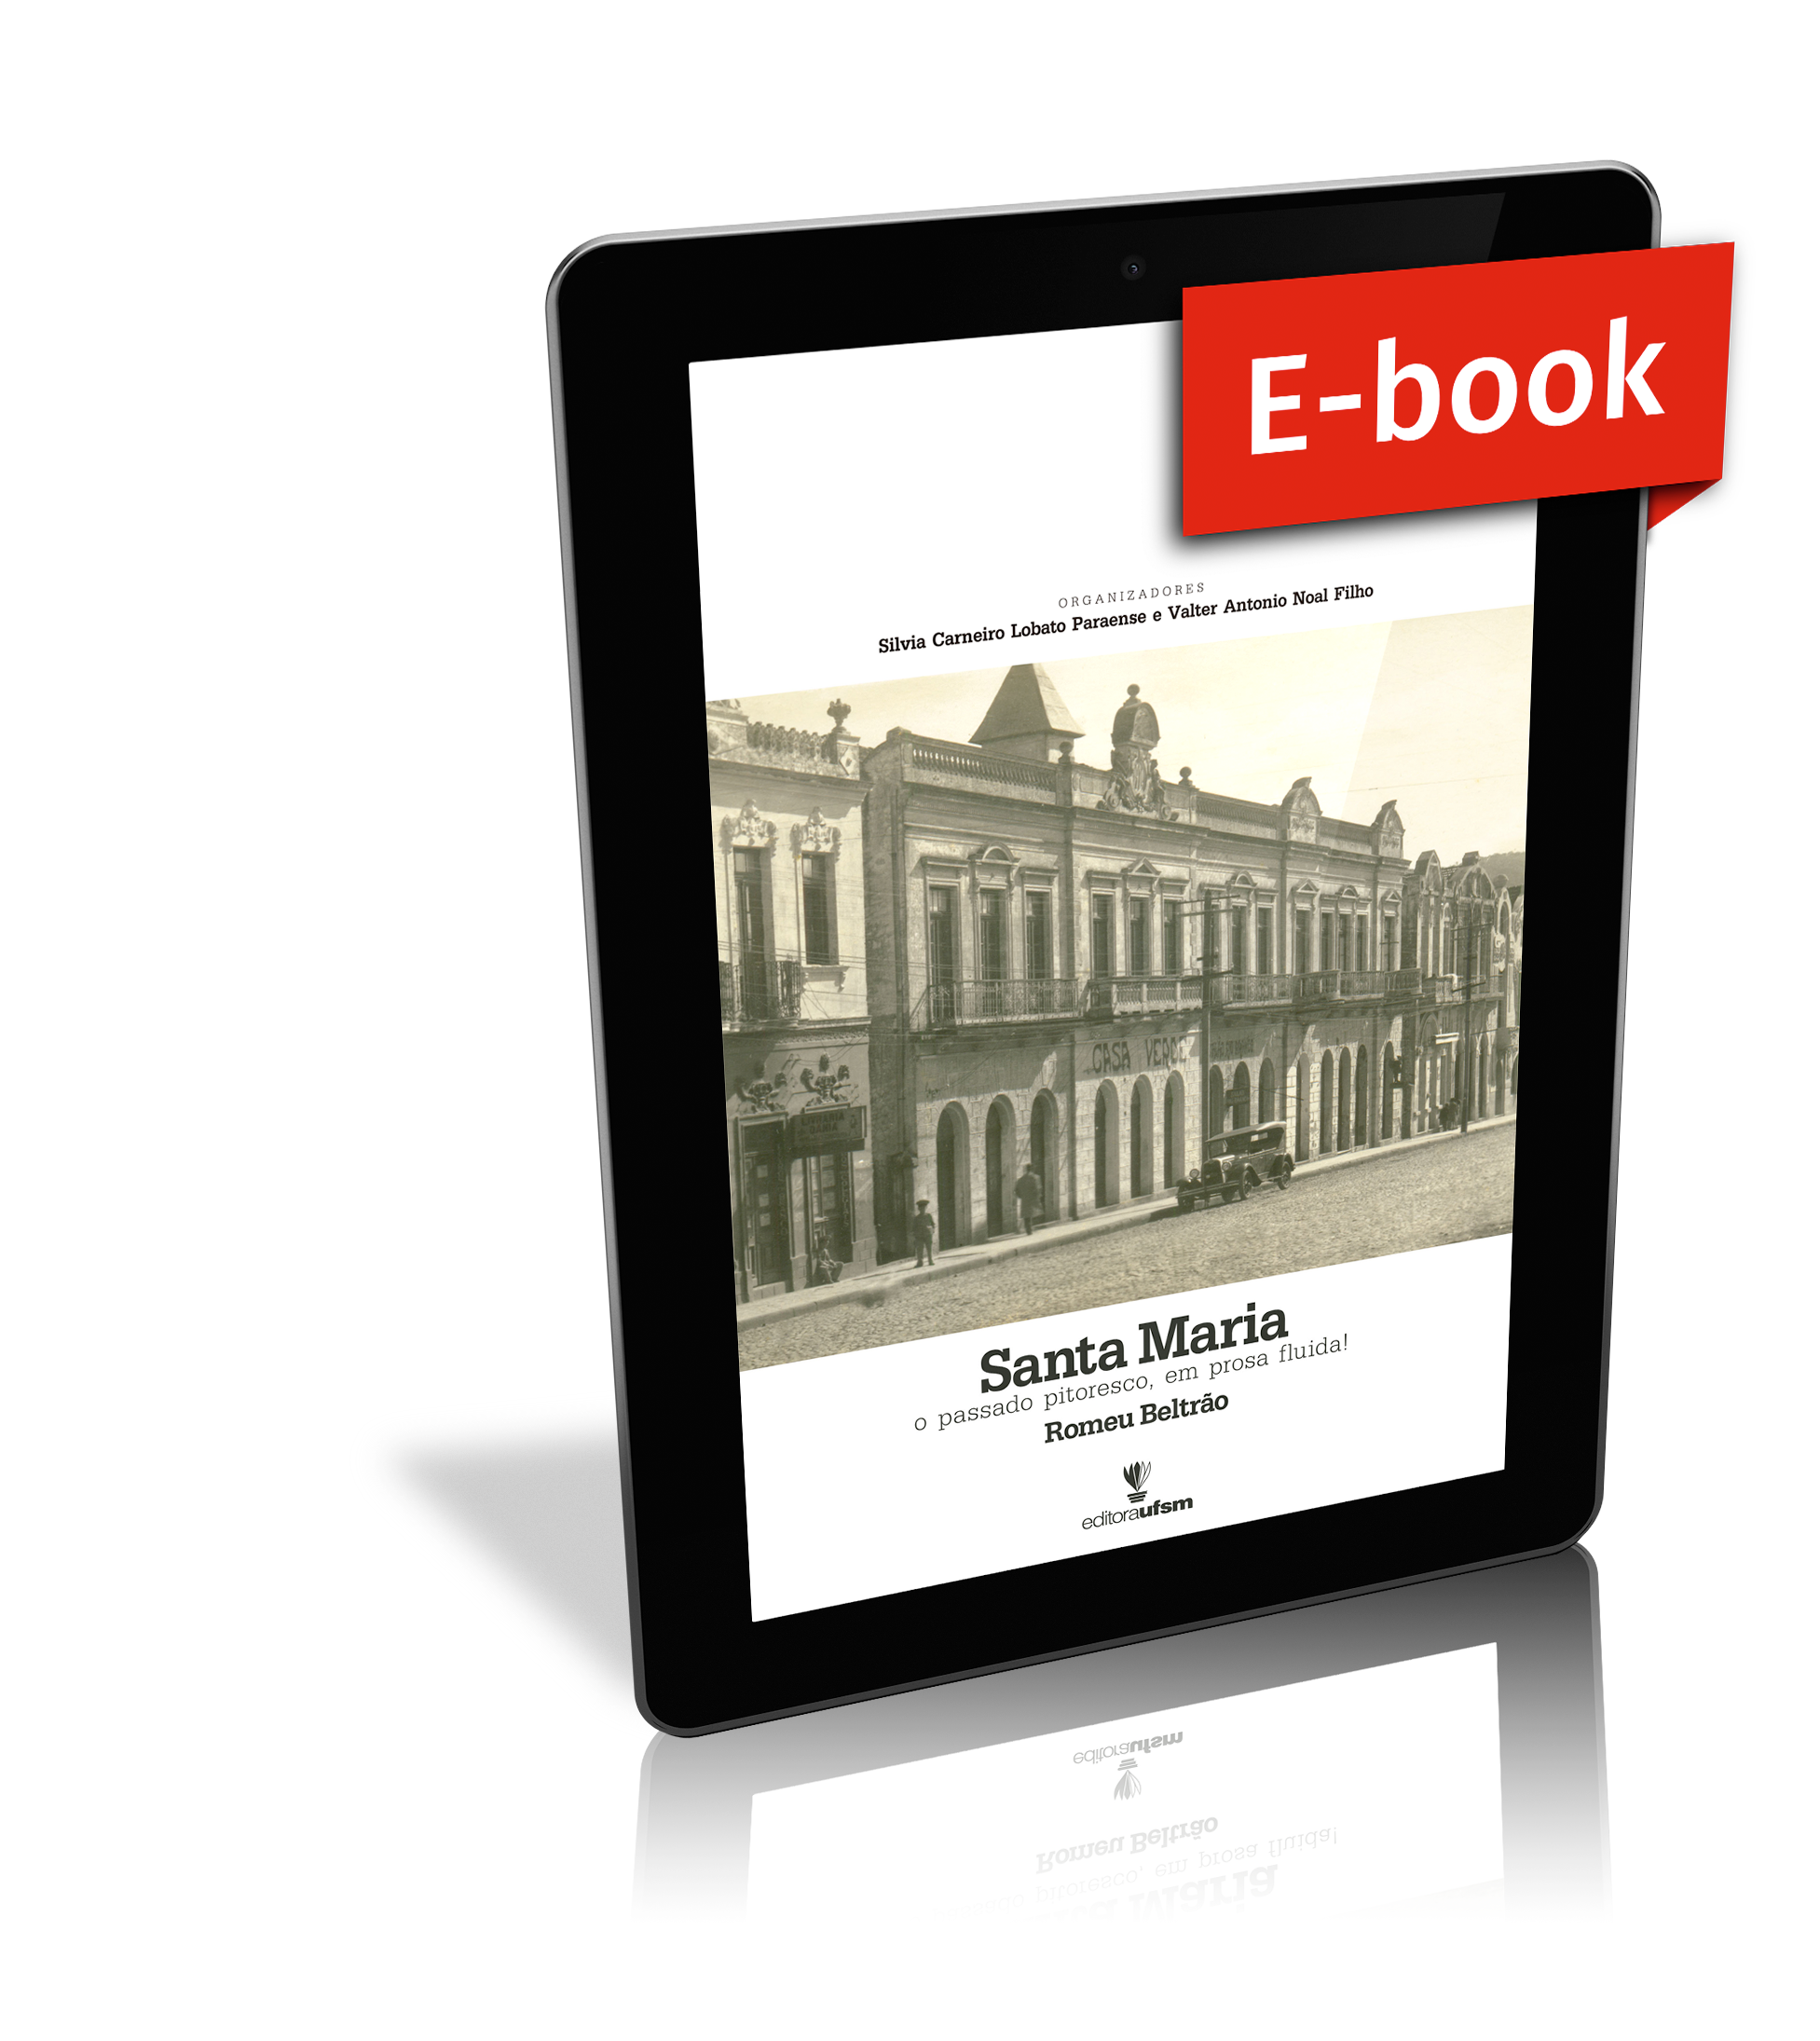 Capa do ebook Santa Maria - o passado pitoresco, em prosa fluida!